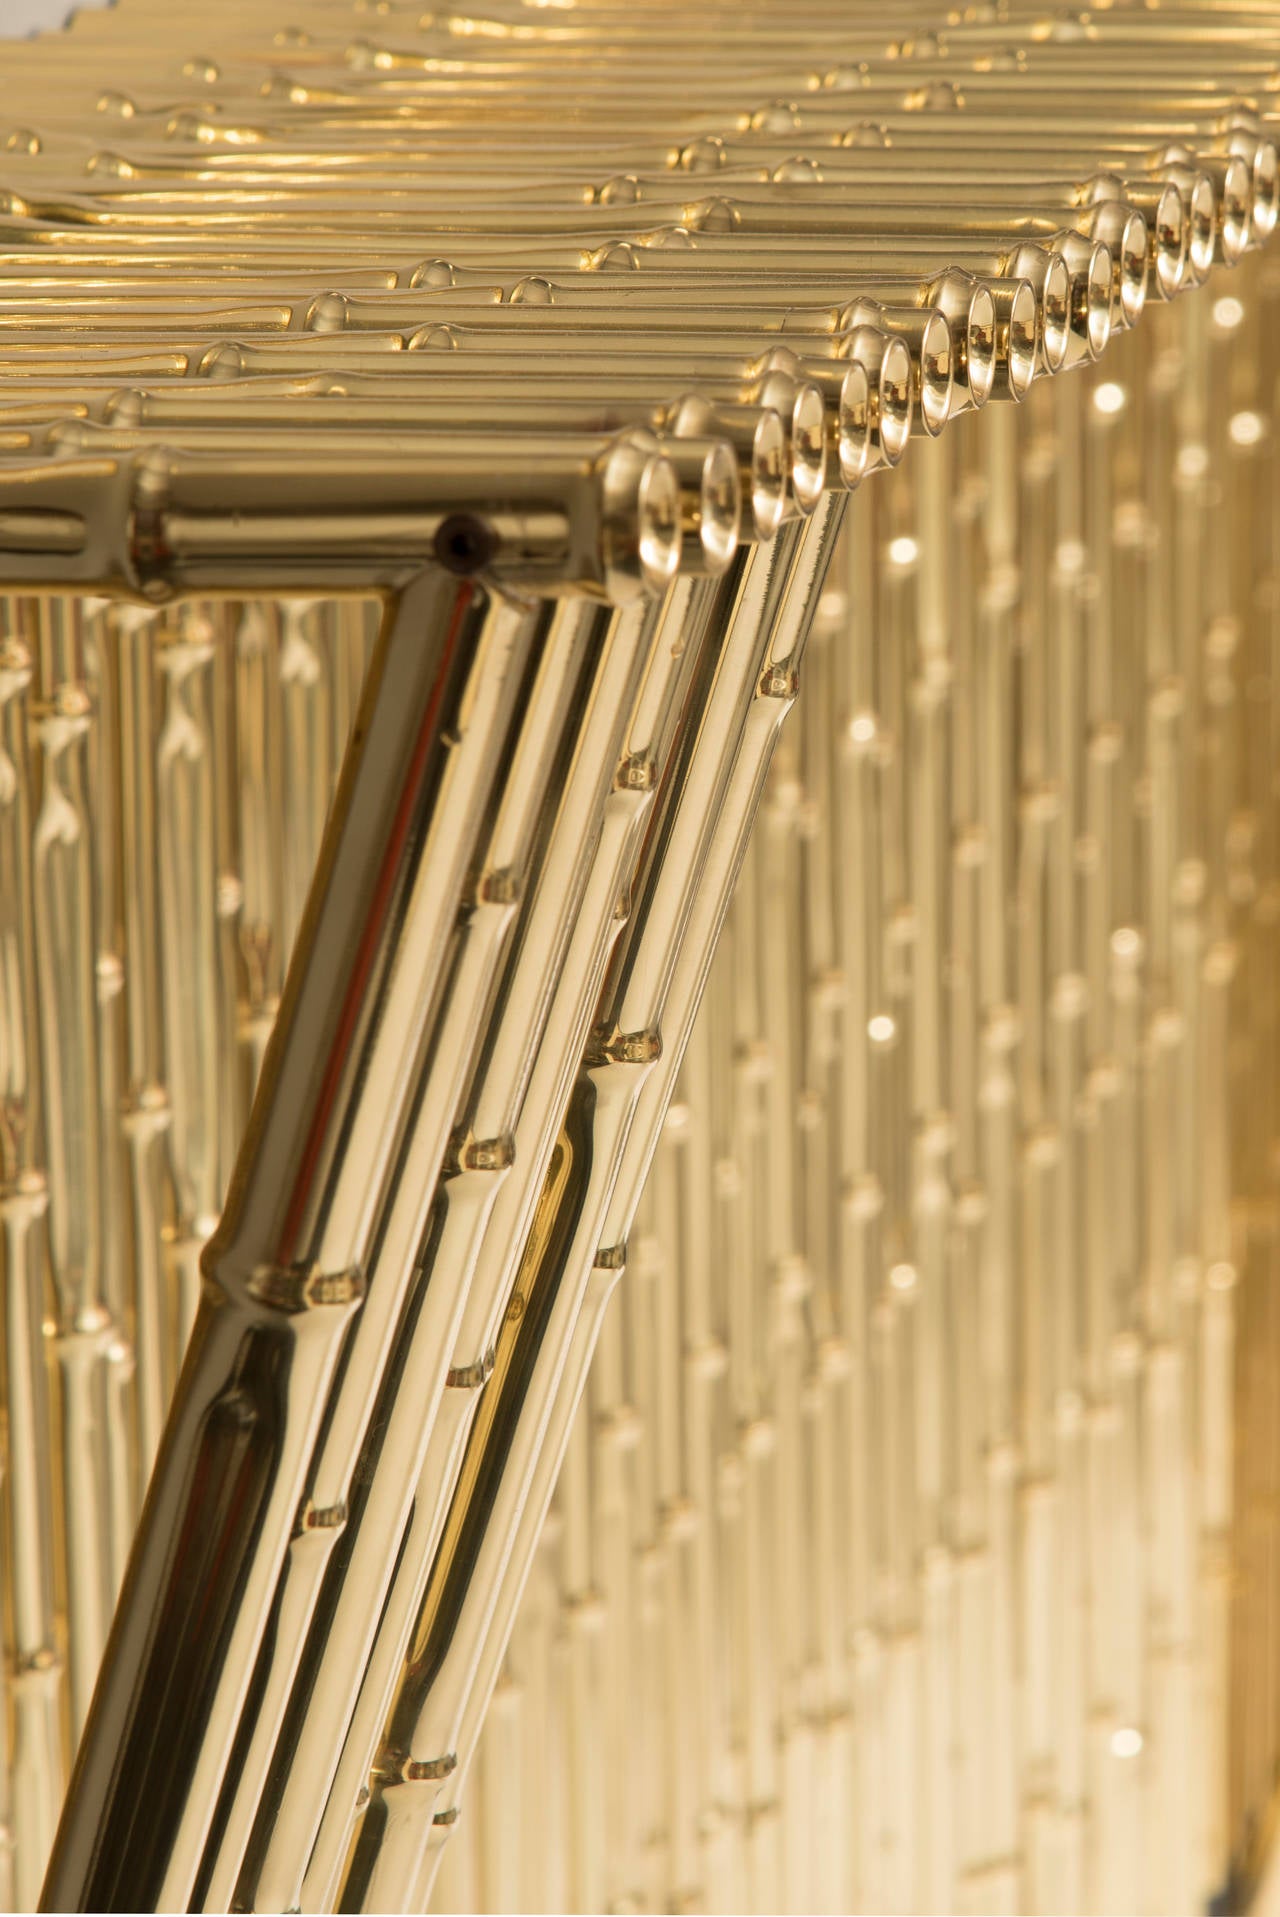 Gilt Ferruccio Laviani Console Table in Gold-Plated Brass, circa 2010 Italy